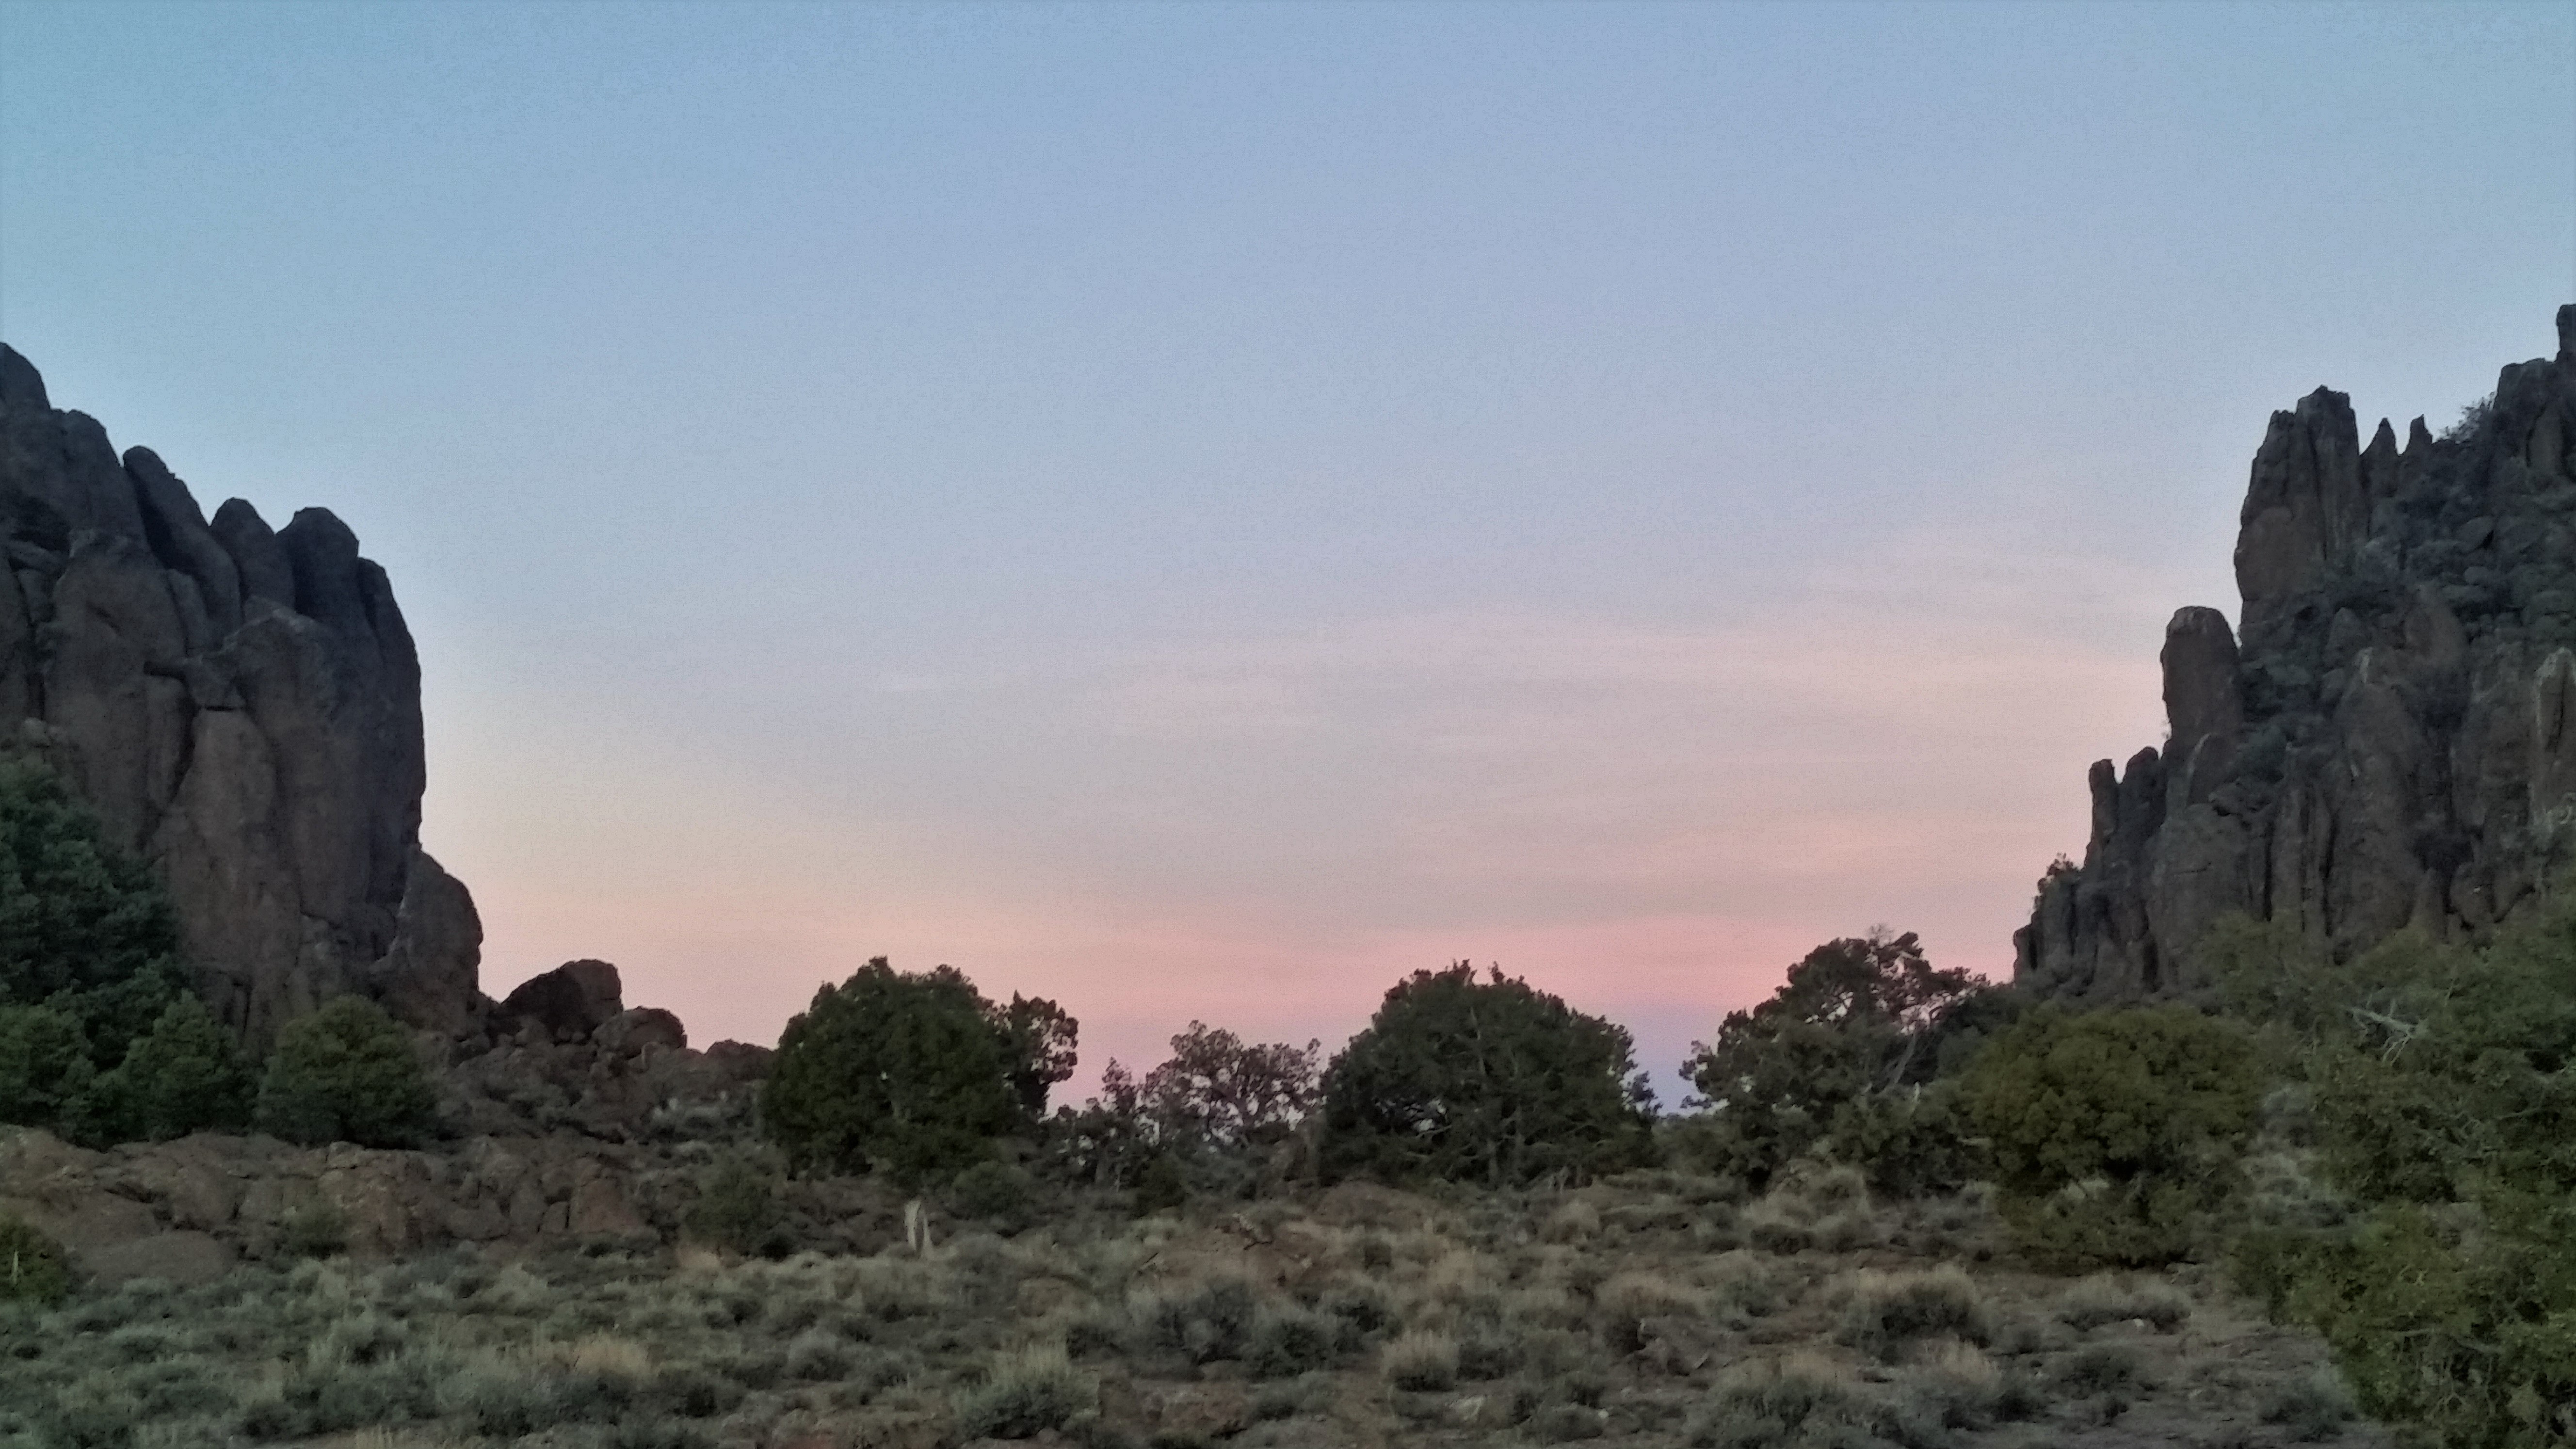 Без туманов и без запаха тайги: High Desert в Неваде